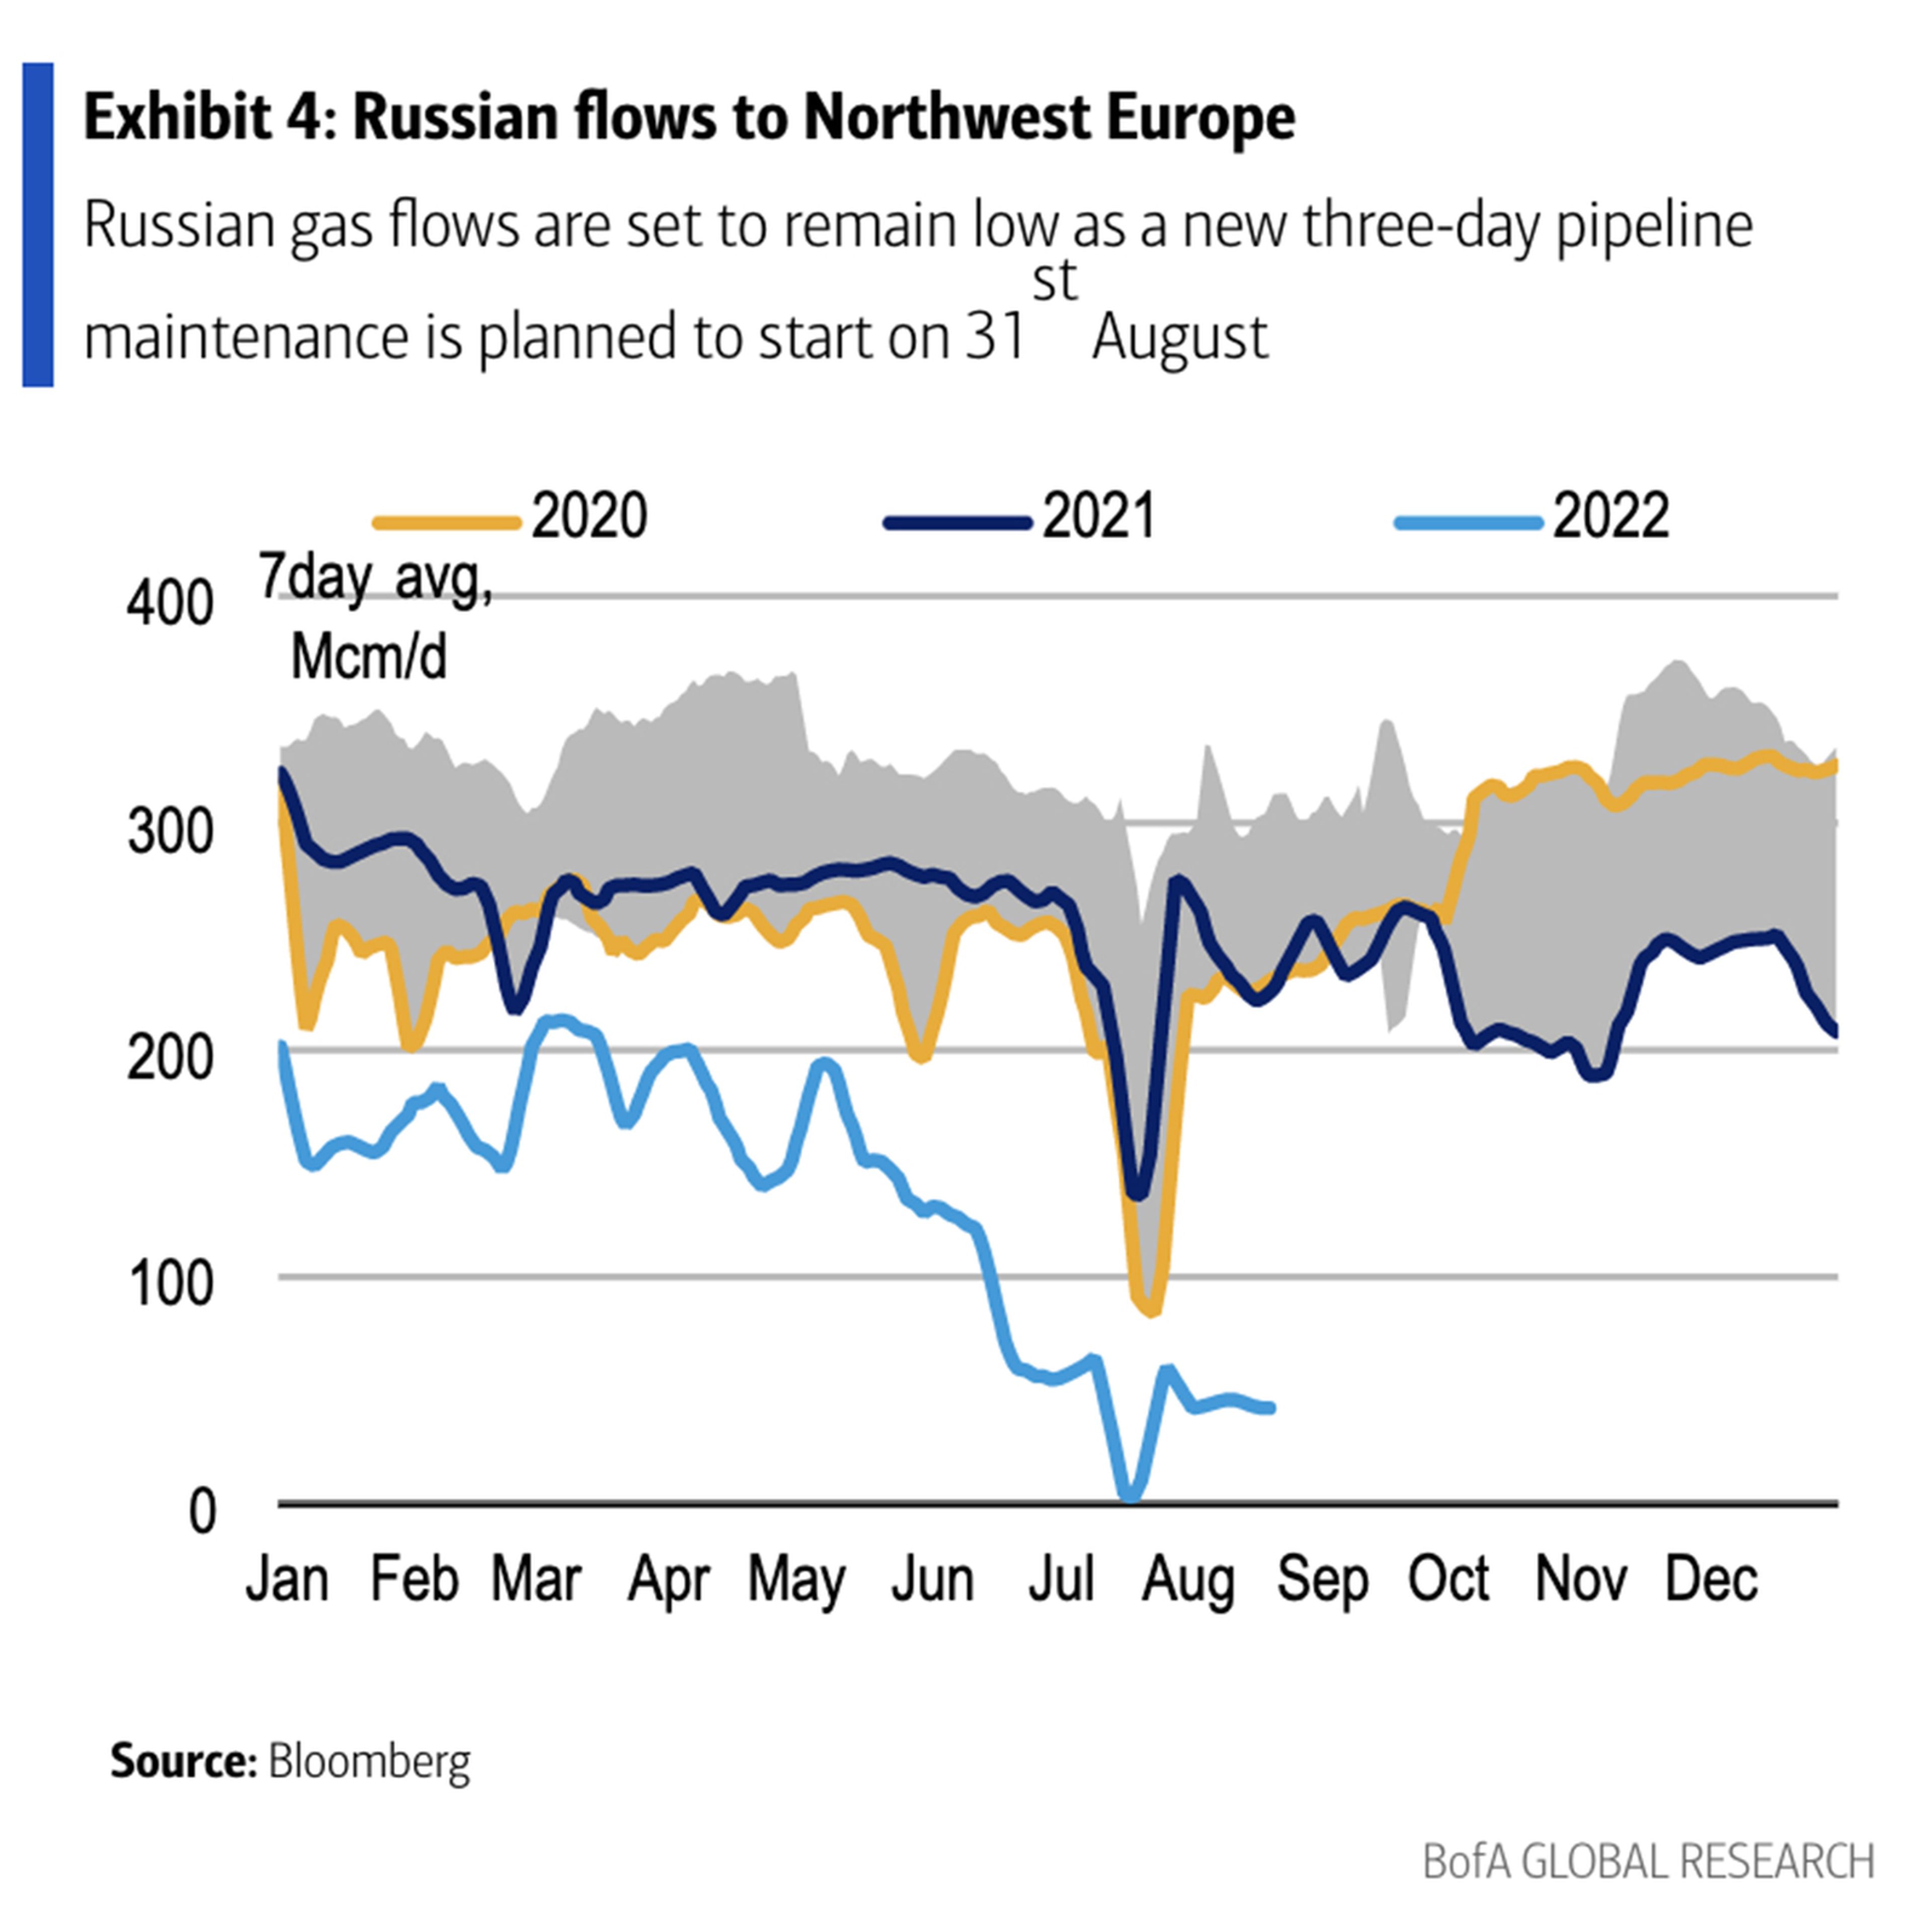 Los flujos de gas ruso seguirán siendo bajos, ya que está previsto que el 31 de agosto comience un nuevo mantenimiento de tres días del gasoducto.